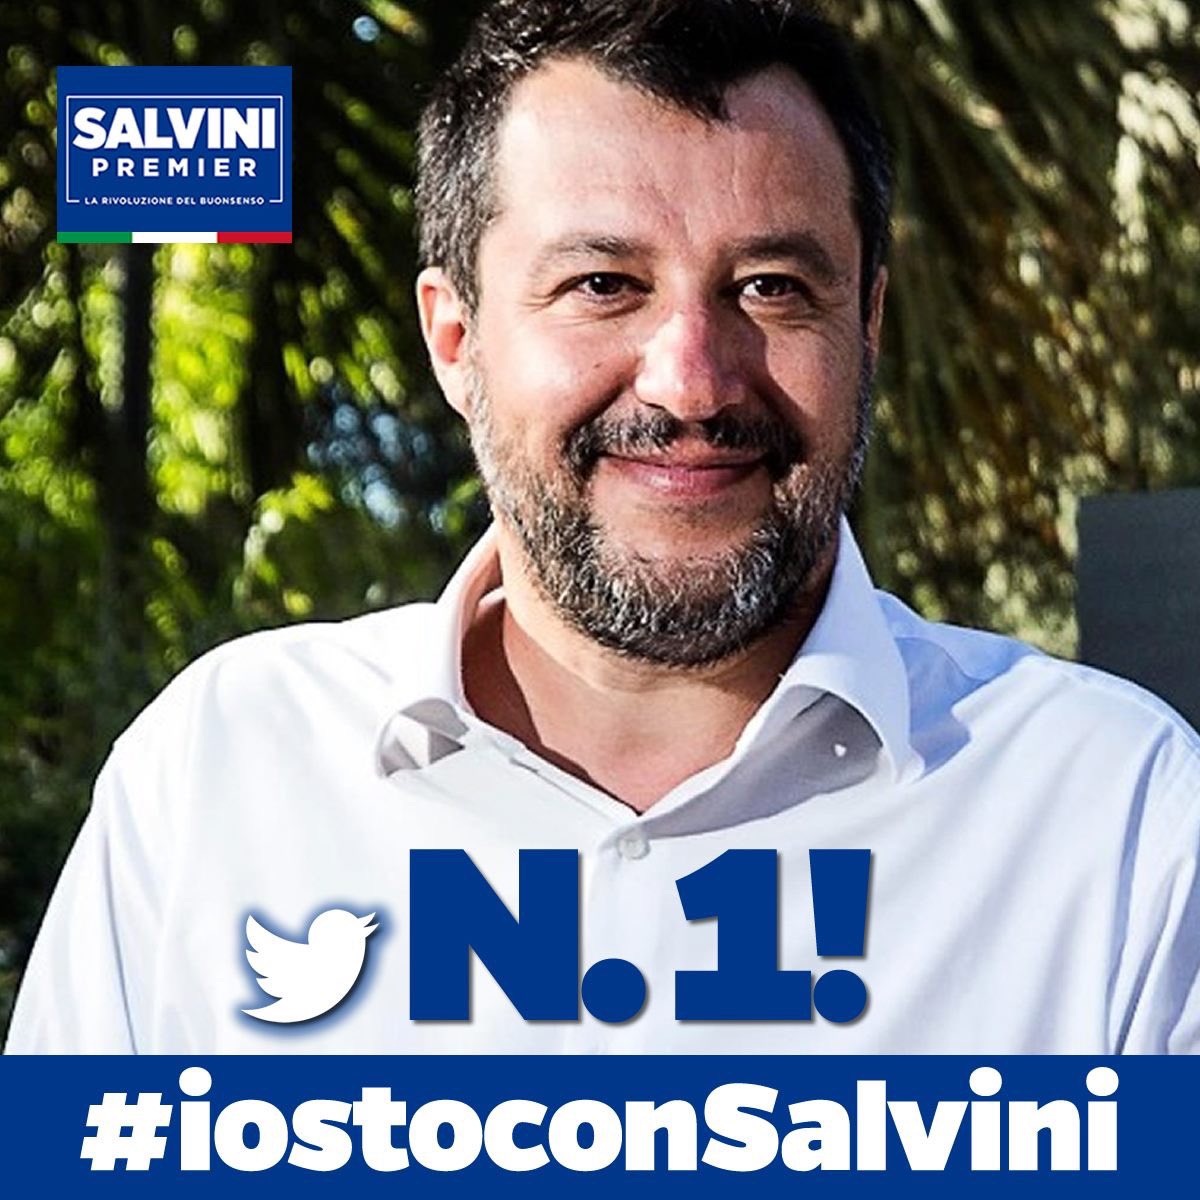 Grazie per chi ha twittato #iostoconSalvini mandandolo in cima alle tendenze, grazie a milioni di Italiani per l’affetto, il sostegno e la fiducia ❤️